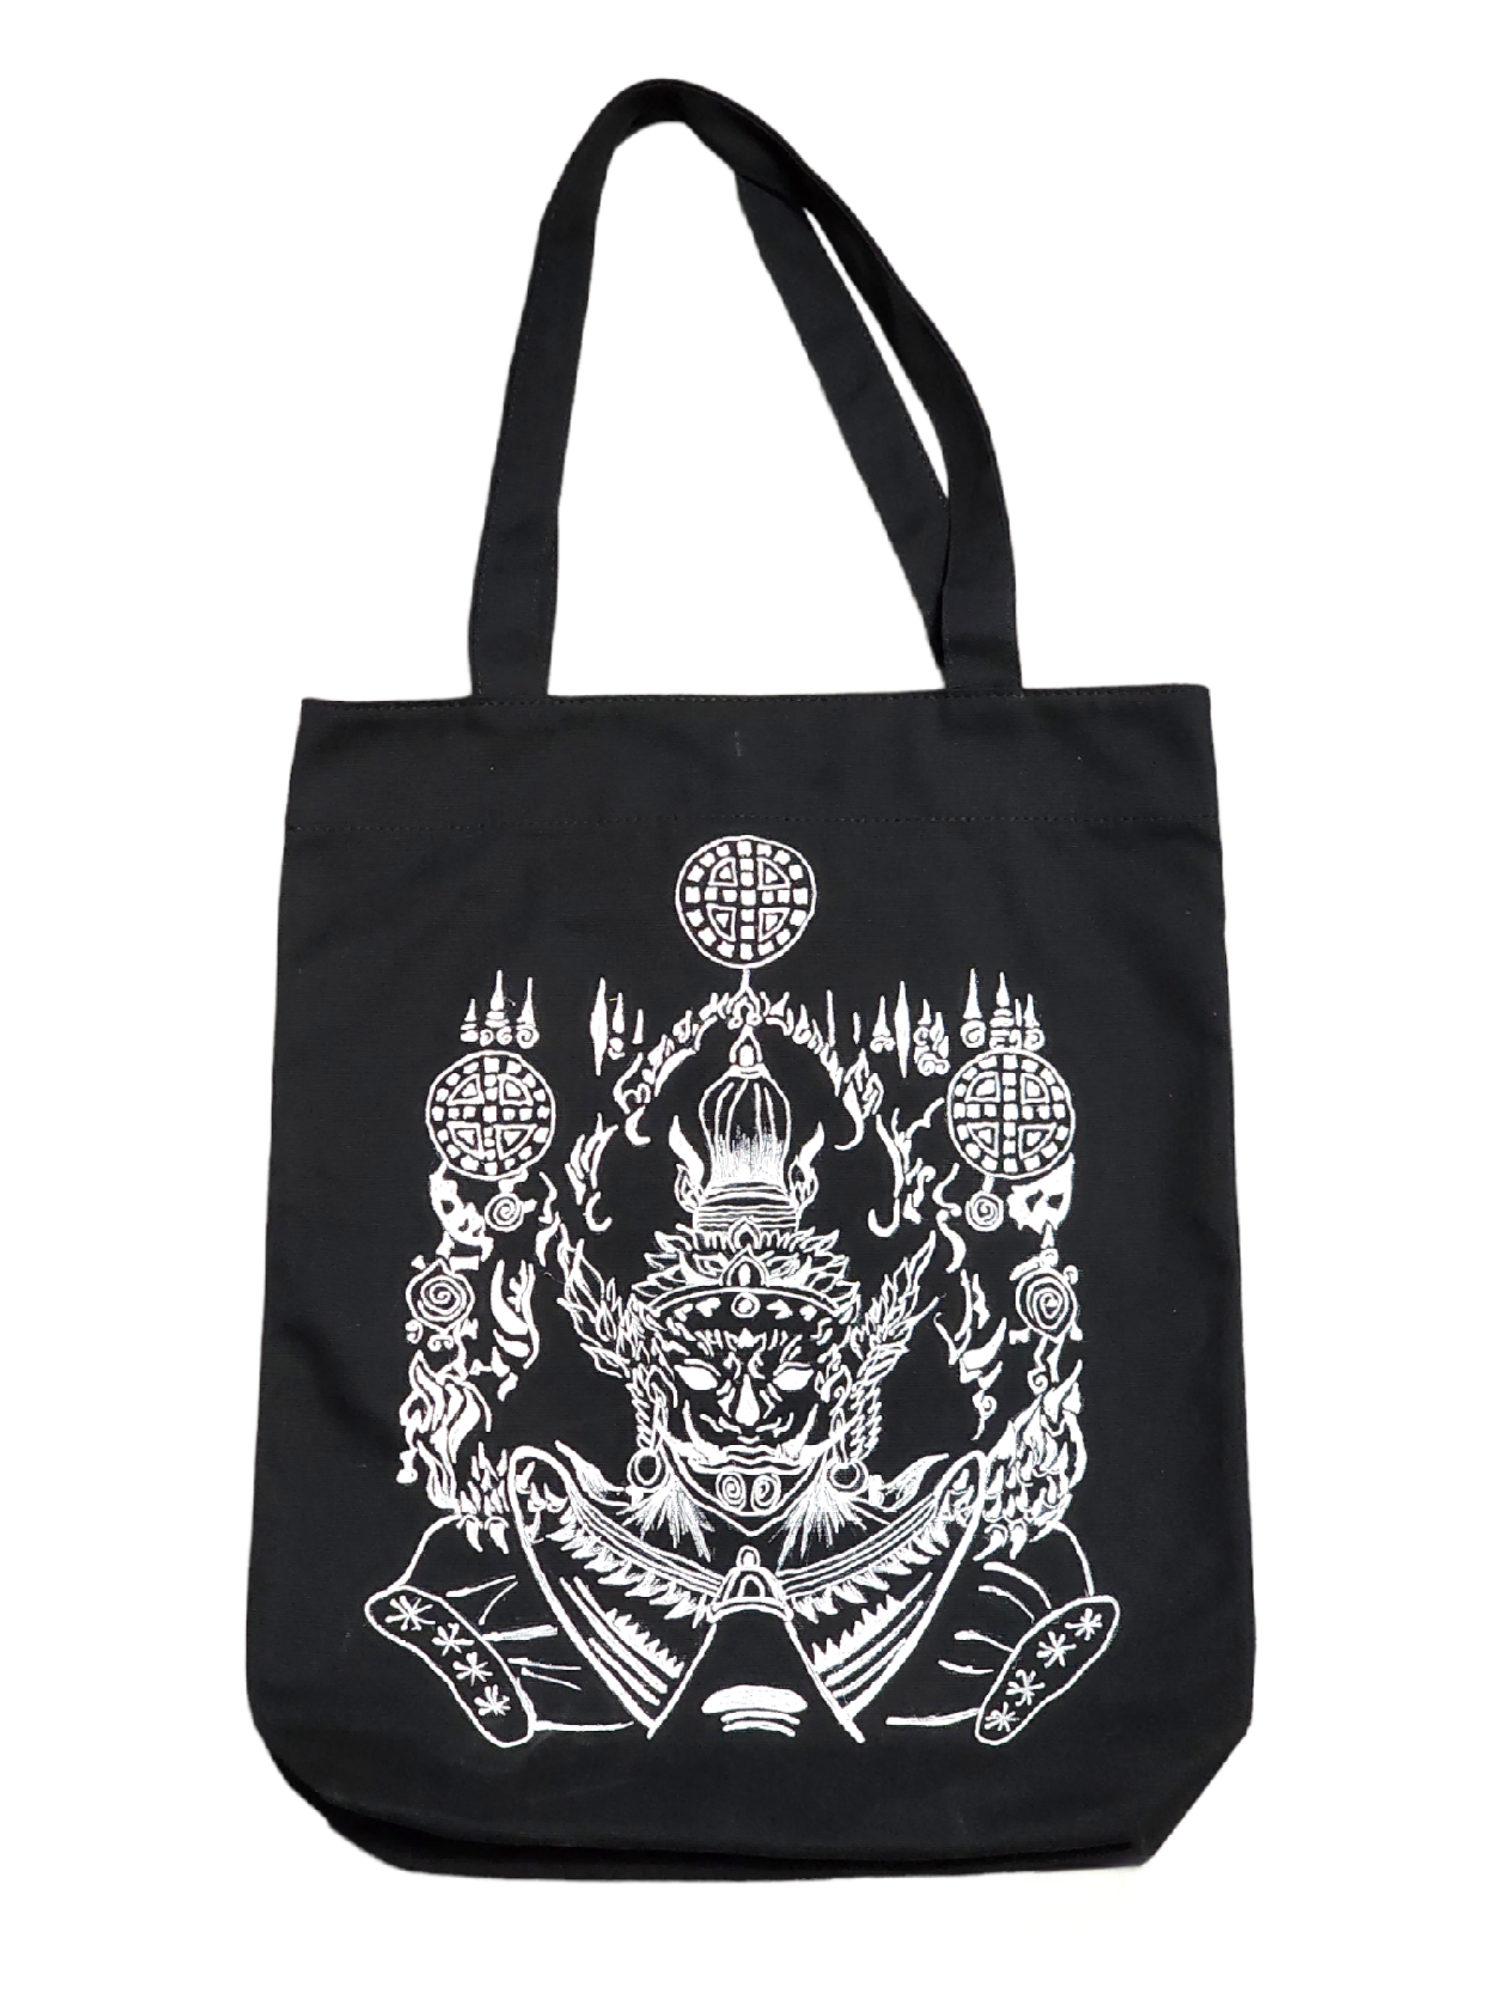 God of Destruction black tote bag - Handmade Drawing